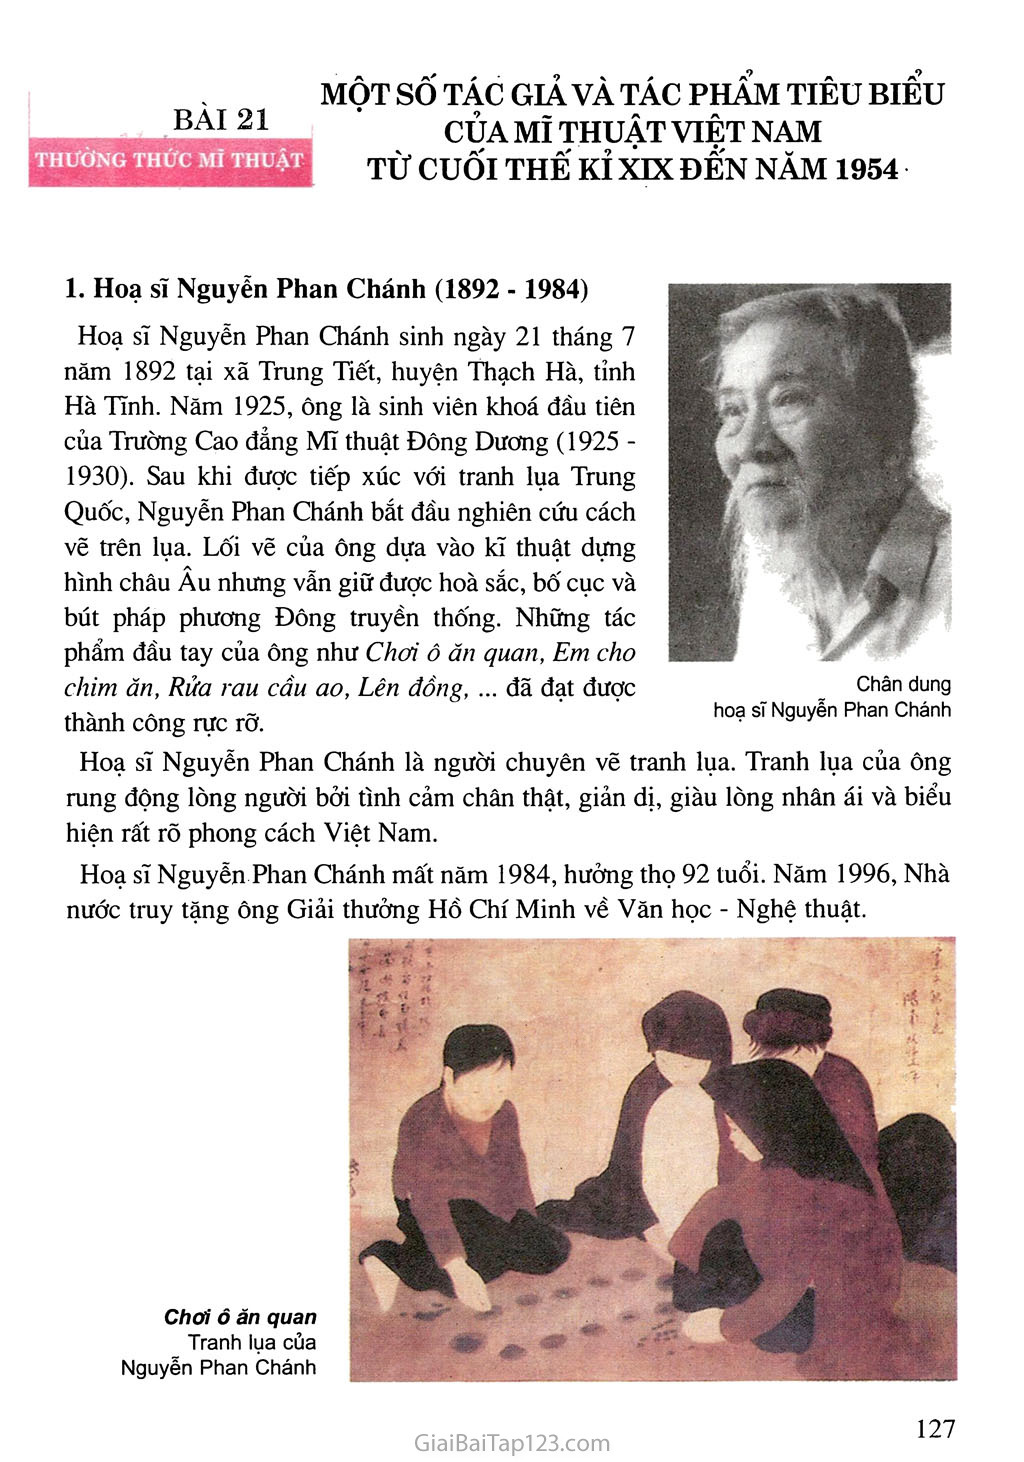 Bài 21. Thường thức mĩ thuật - Một số tác giả và tác phẩm tiêu biểu của mĩ thuật Việt Nam từ cuối thế kỉ XIX đến năm 1954 trang 1